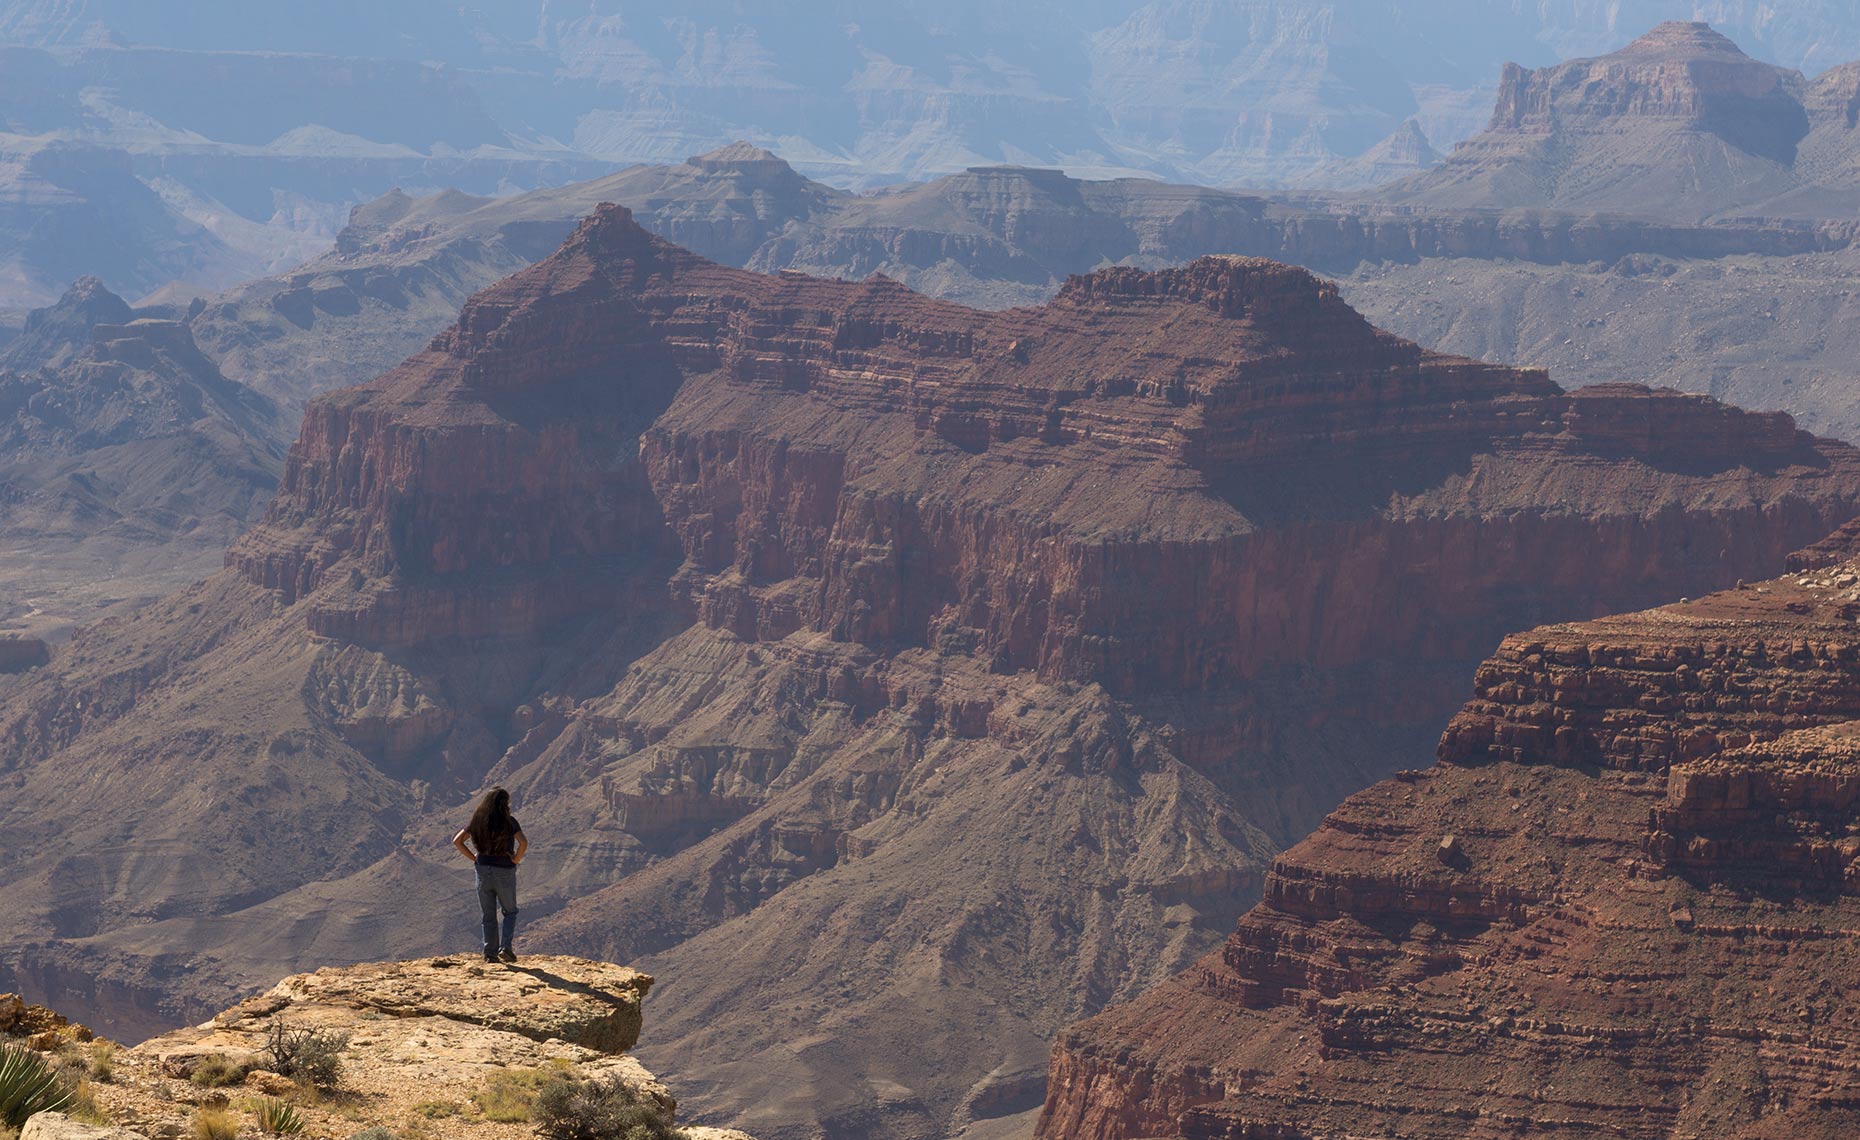 Smithsonian: Saving the Grand Canyon